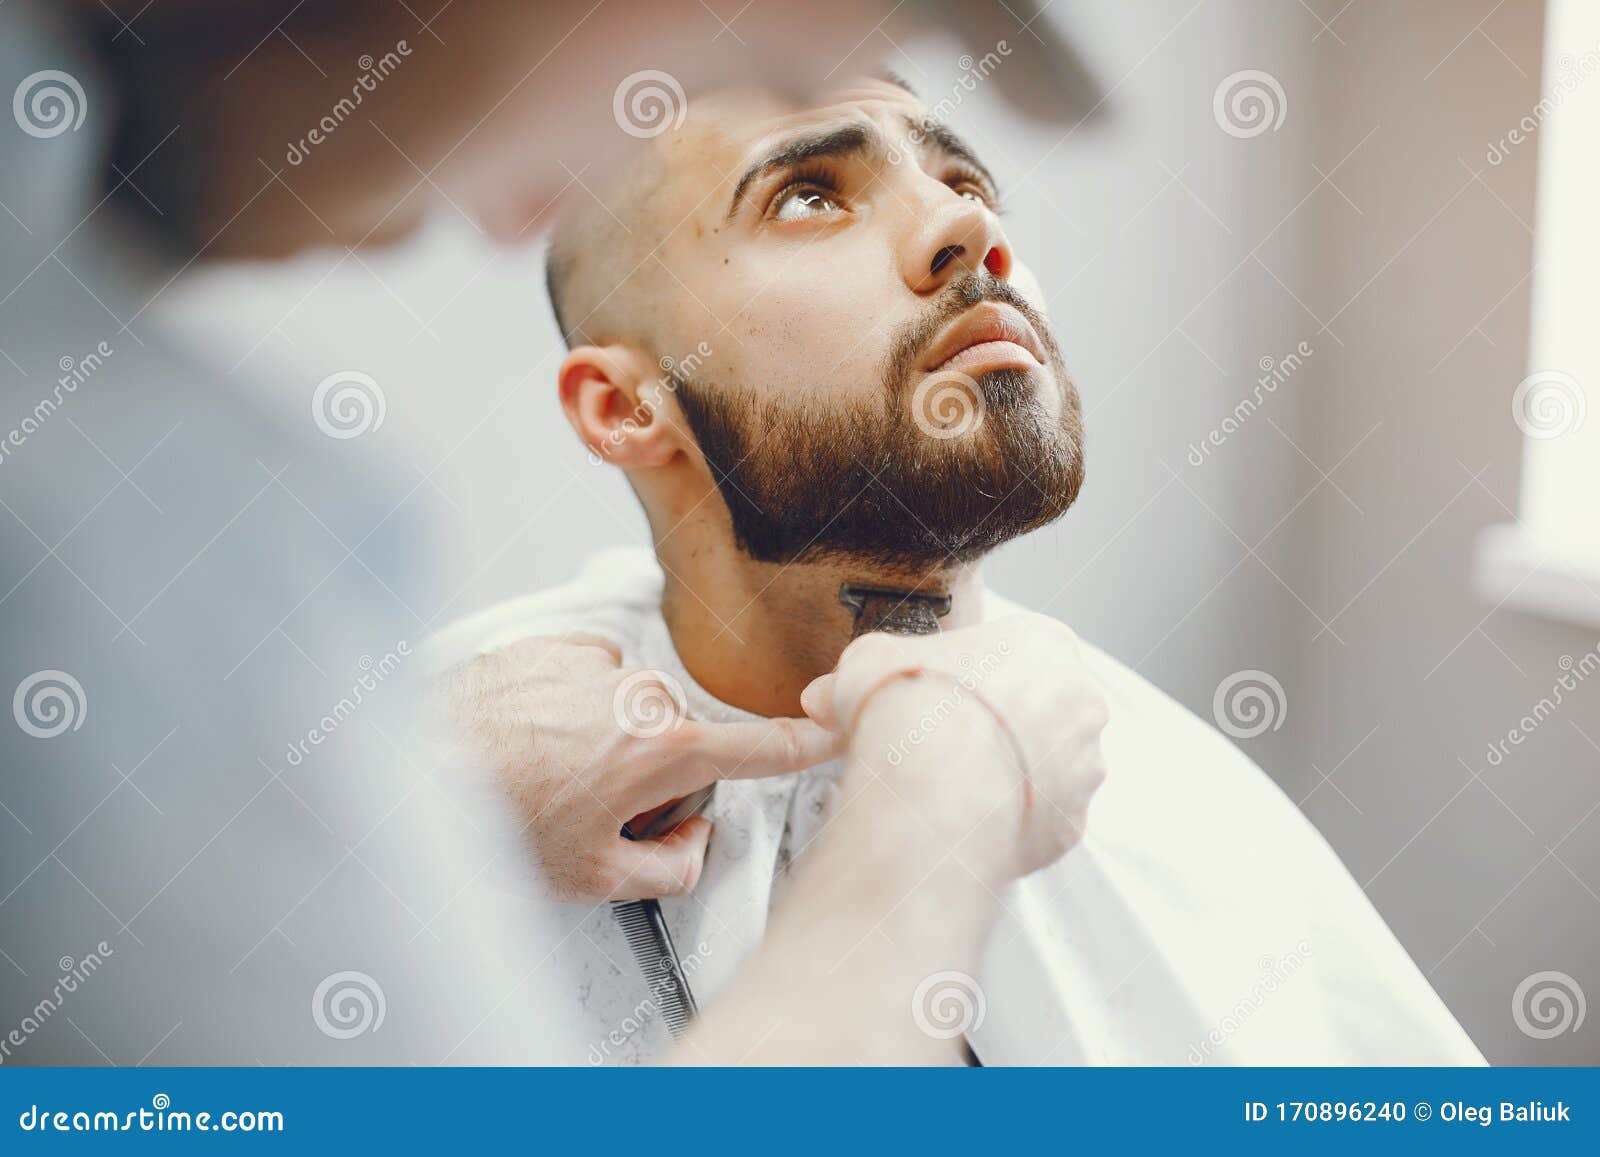 El Hombre Se Corta La Barba En La Barbería Foto de archivo